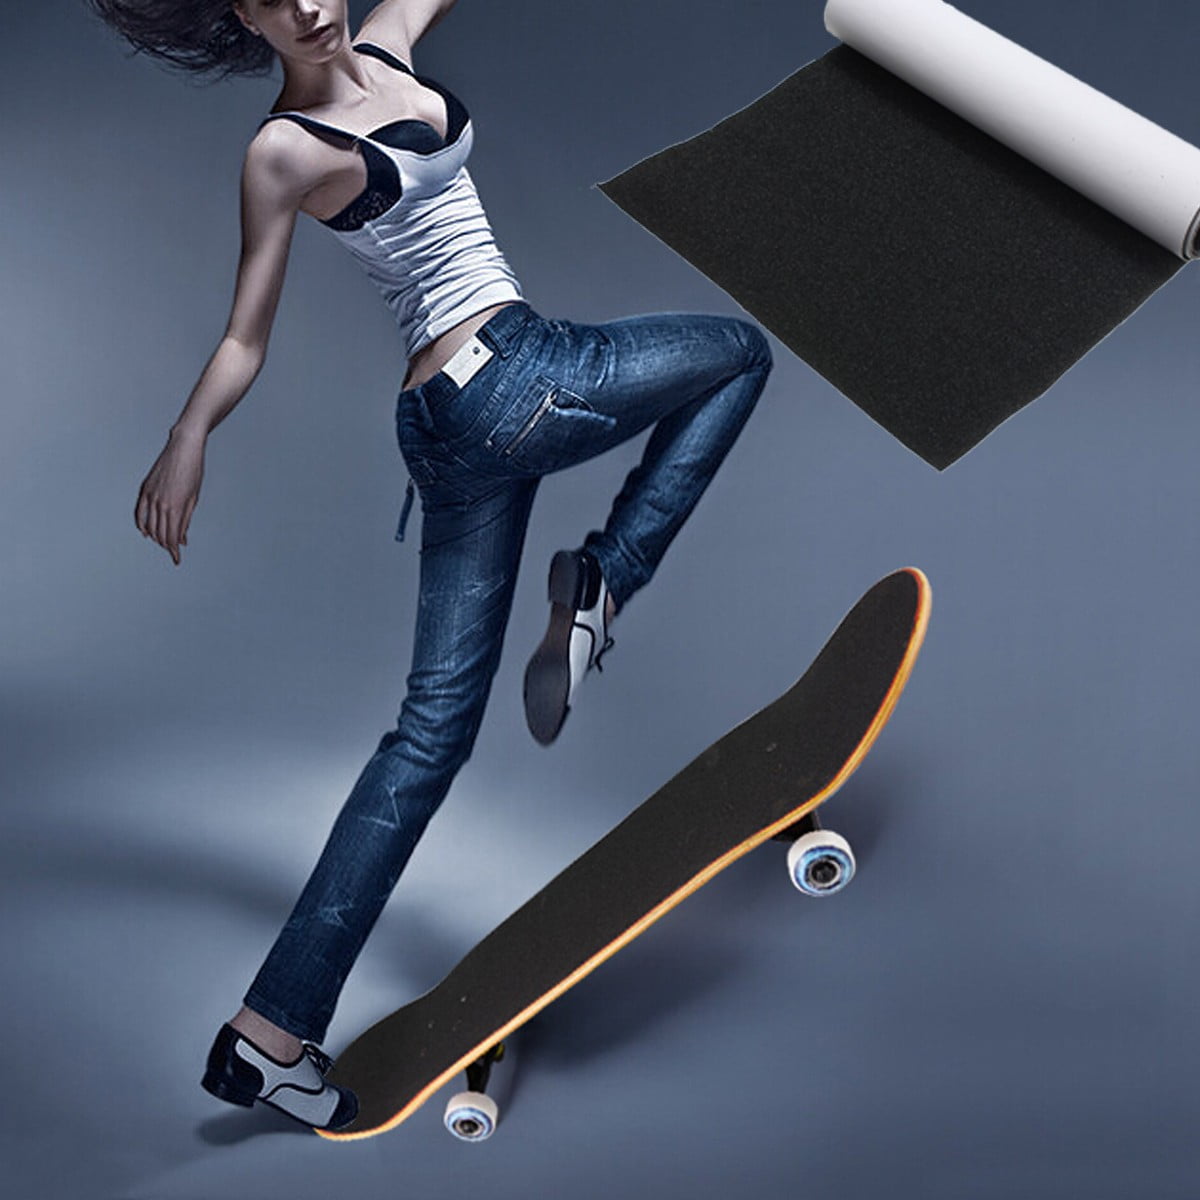 33"X9" Waterproof Skateboard Deck Sandpaper Grip Tape Griptape Skating Board HGU 